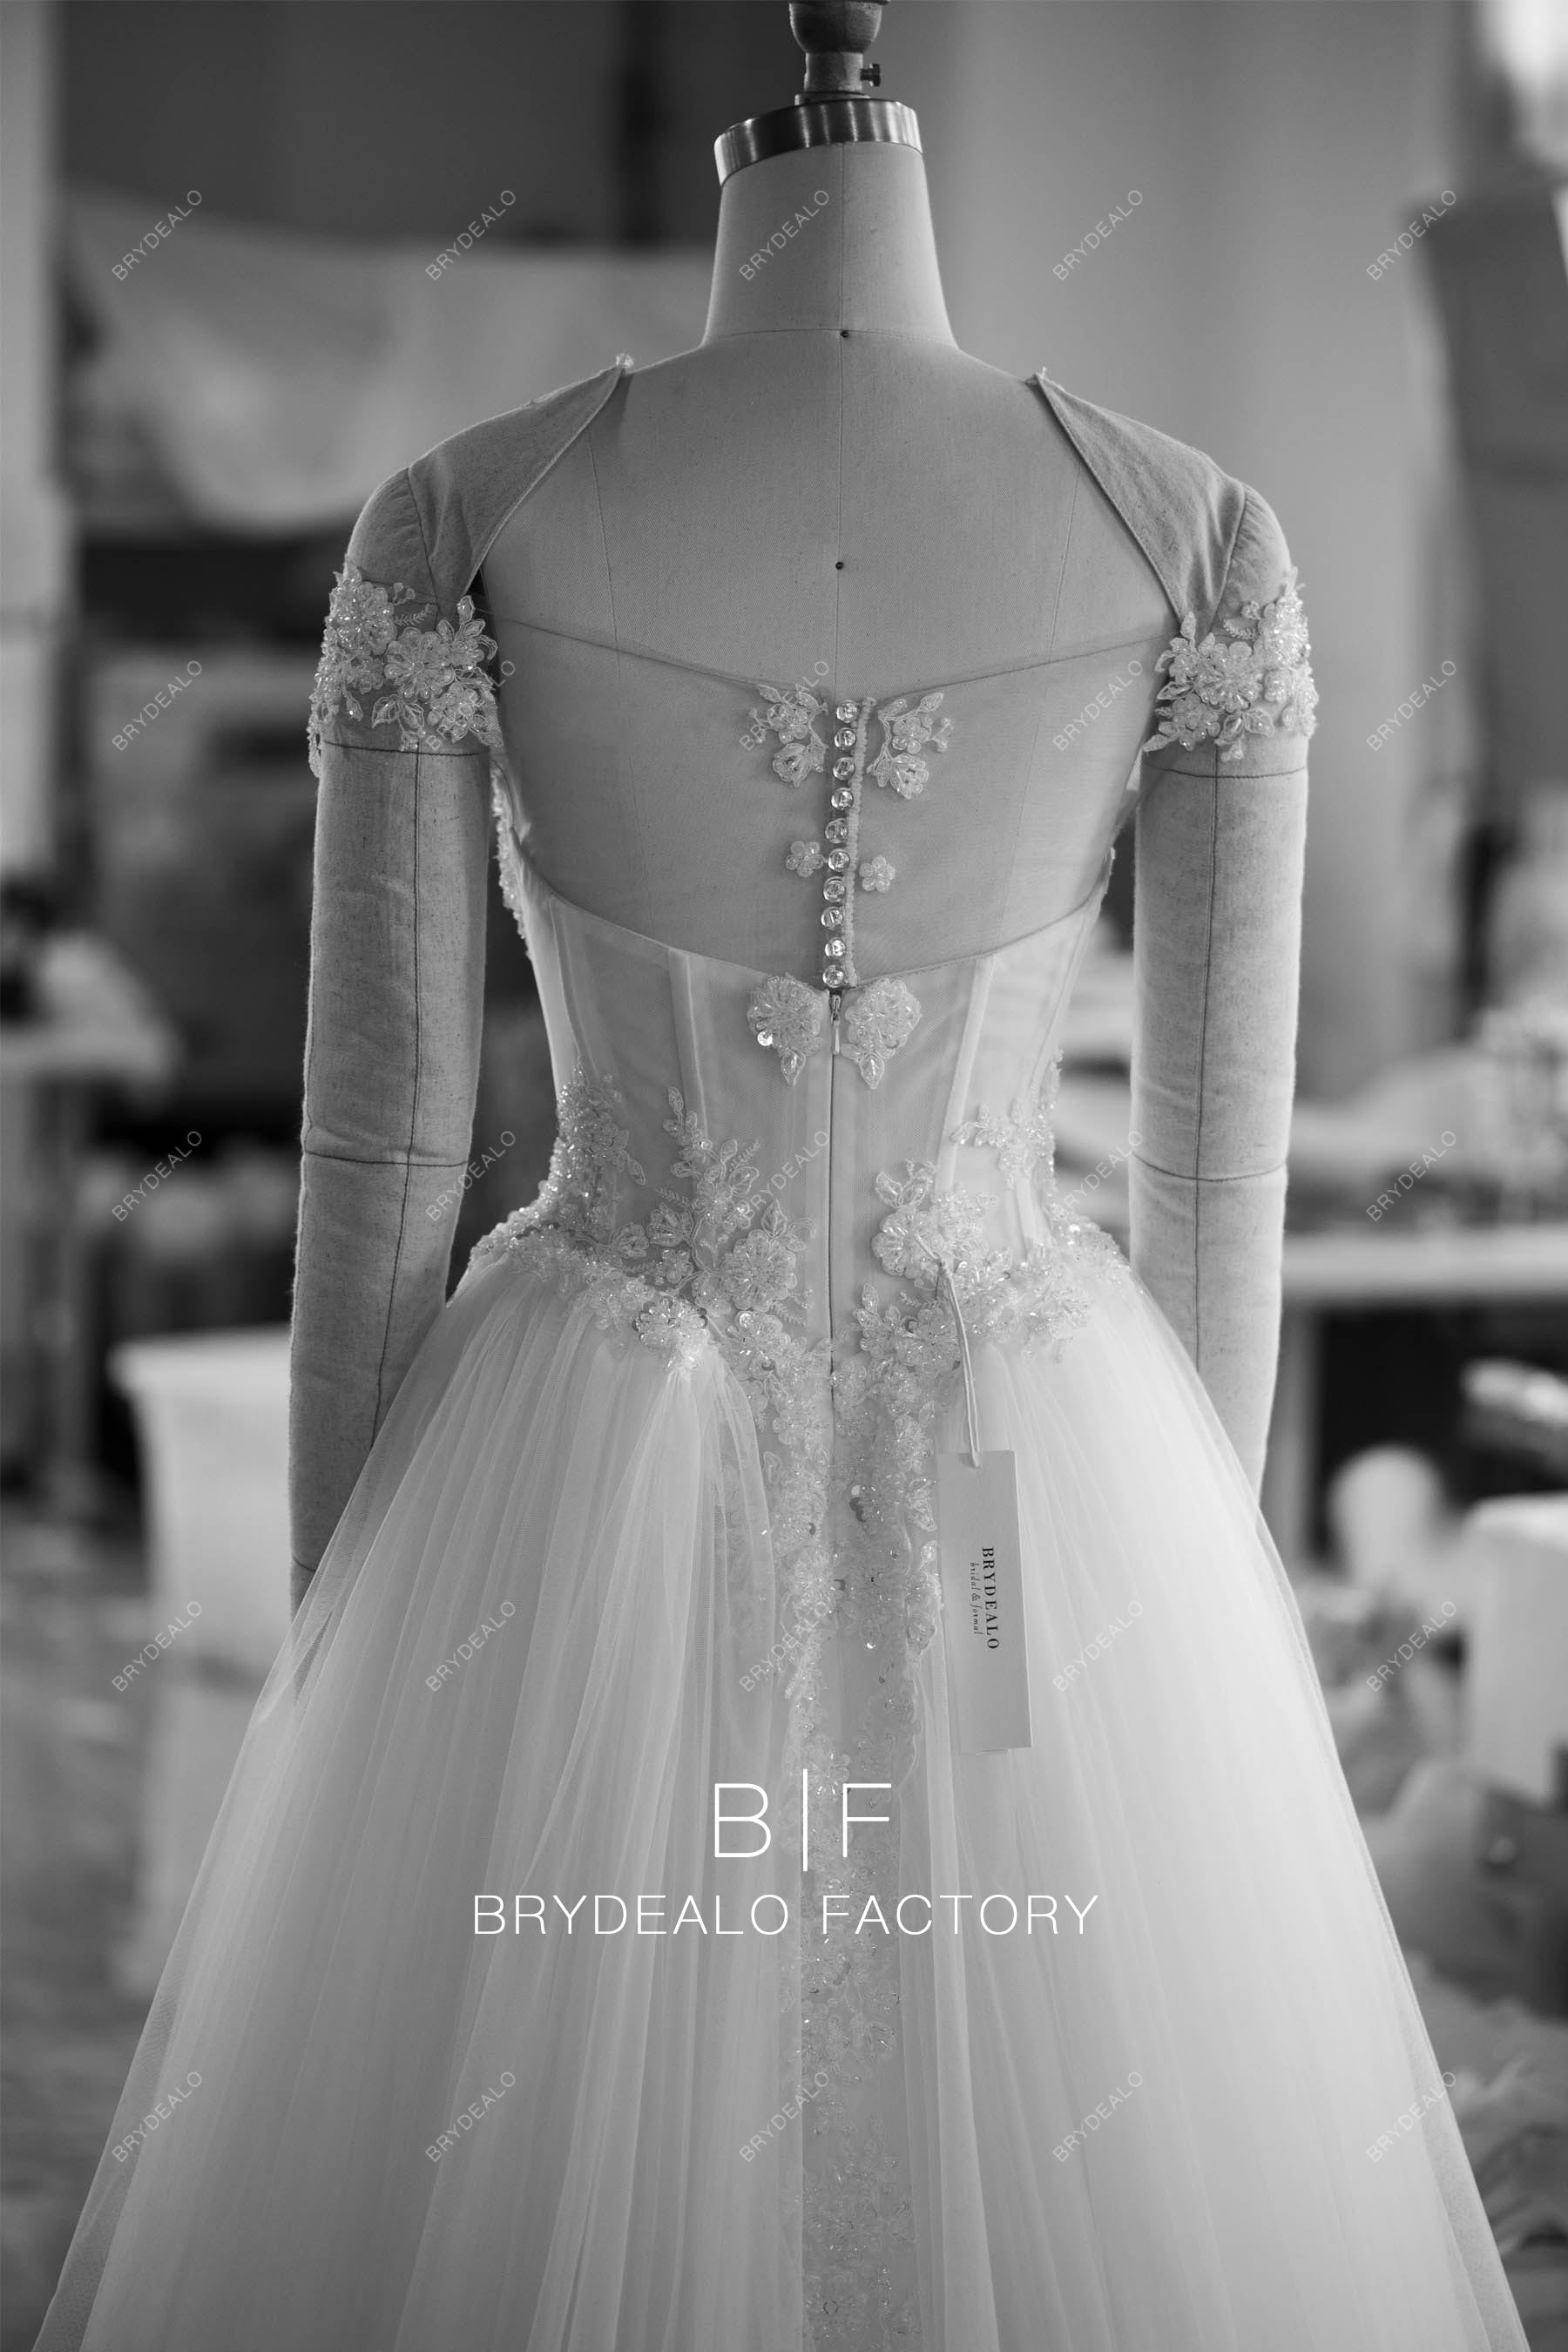 basque waist bridal dress